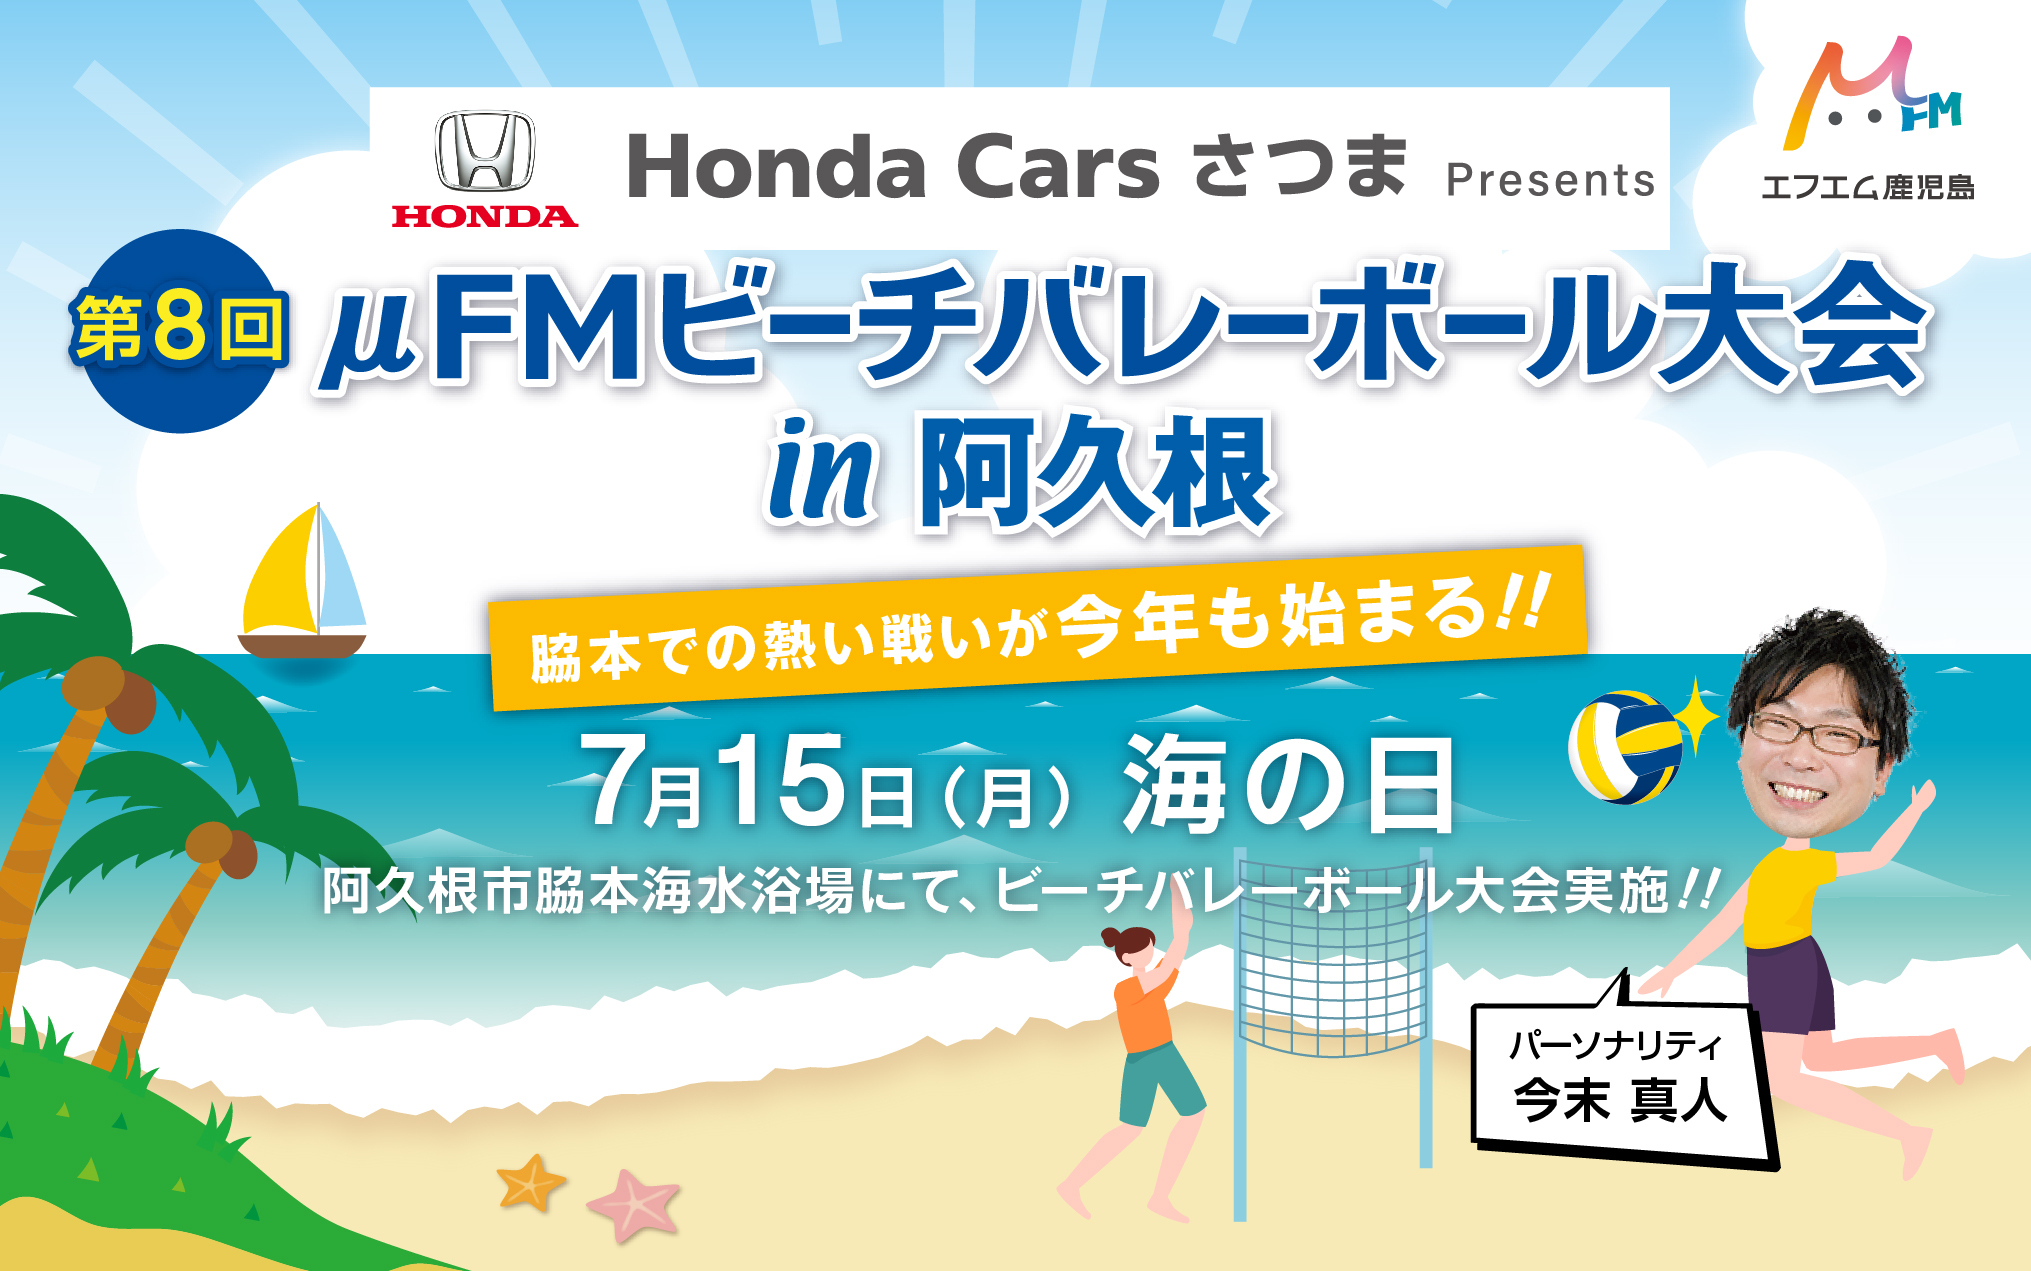 Honda Cars さつま presents　第8回 μFM ビーチバレーボール大会 in 阿久根